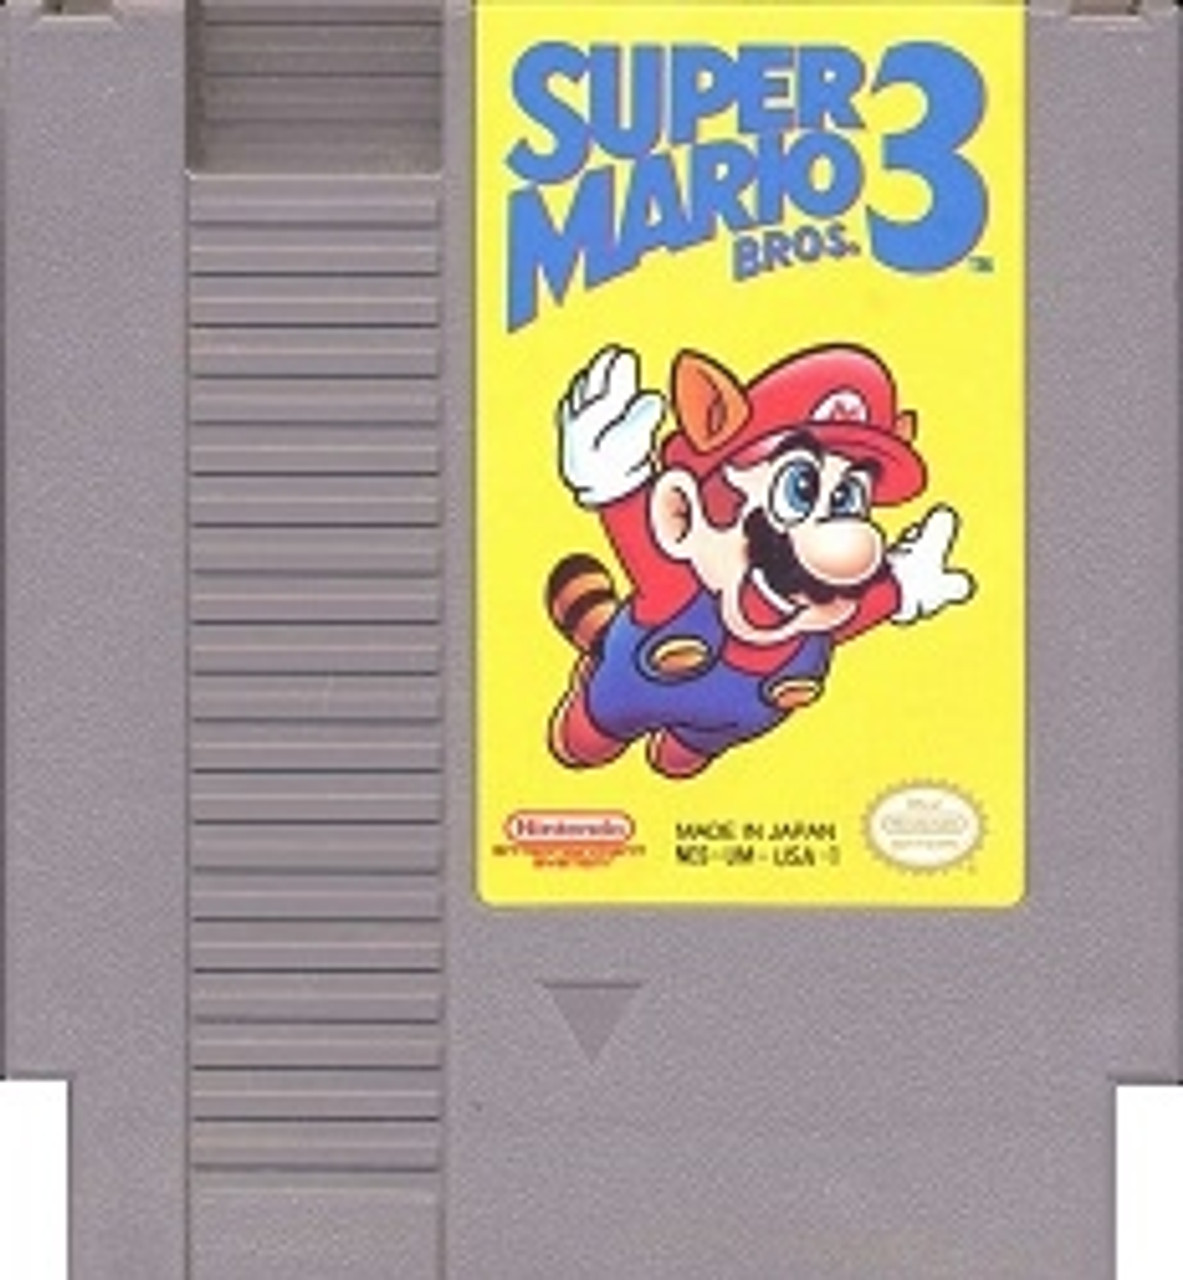 super-mario-bros-3-nintendo-nes-original-game-for-sale